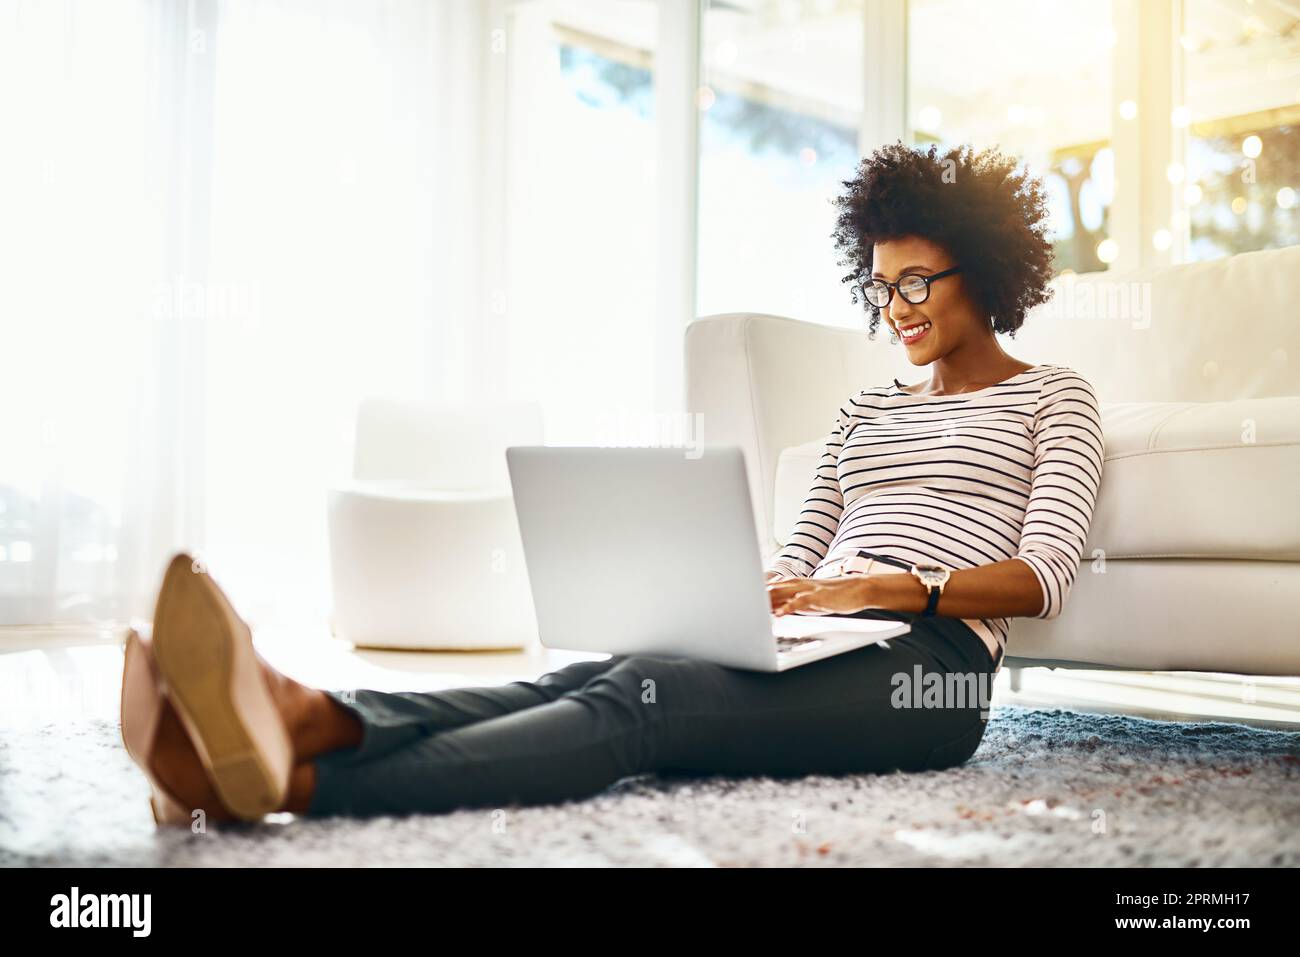 Nur ein weiterer Tag, an dem ich in meinem eigenen Heimbüro arbeite. Eine fröhliche junge Frau, die auf ihrem Laptop online einkauft, während sie zu Hause auf dem Boden sitzt. Stockfoto